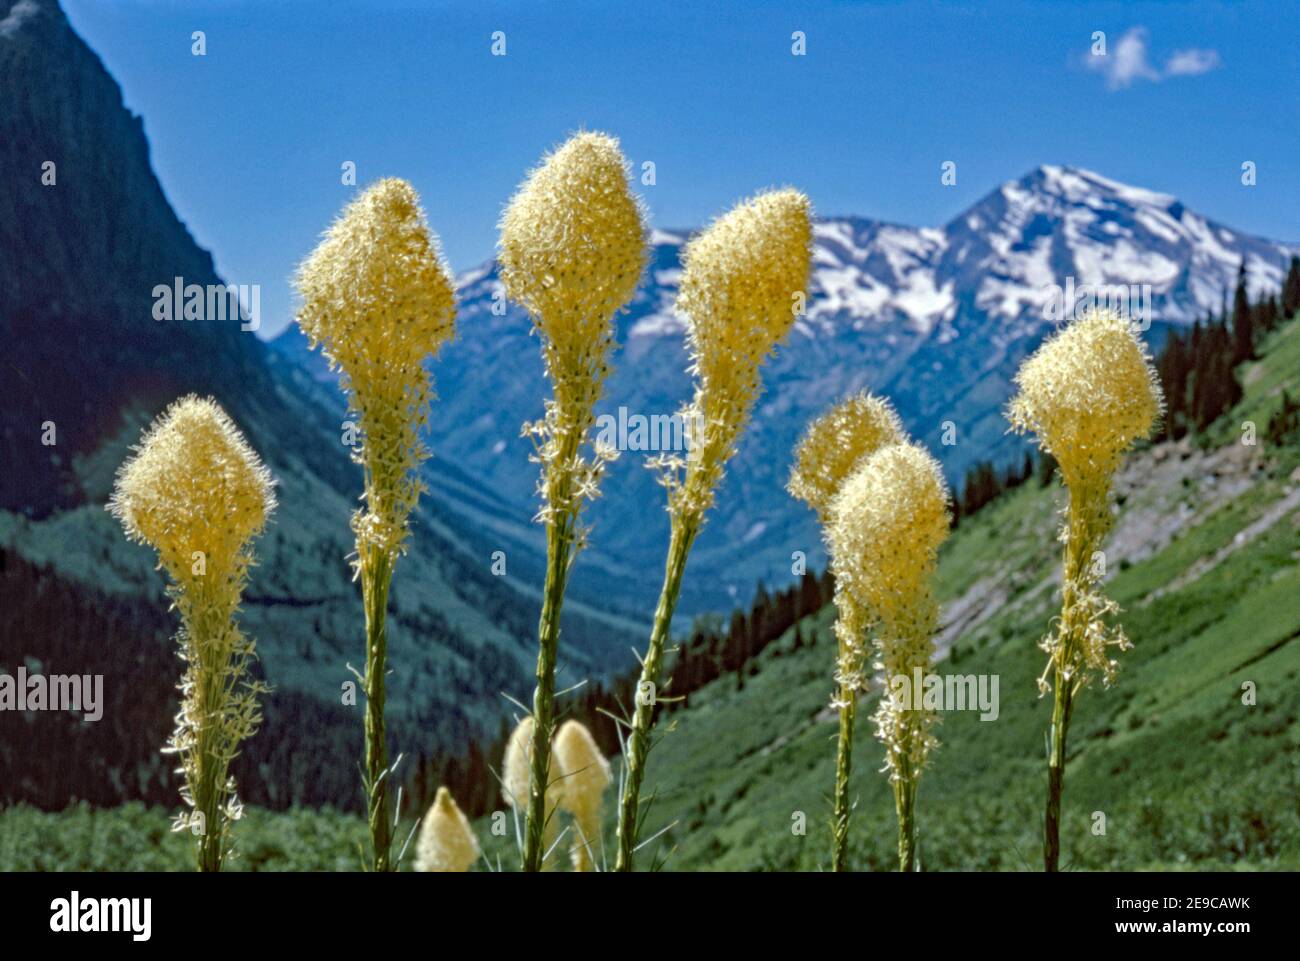 Xerophyllum tenax (Bärengras, Squaw Grass, Seifengras, Quip-Quip und indisches Korbgras) in den Rocky Mountains. Es ist eine nordamerikanische Pflanzenart in der Familie der Maissilie. Xerophyllum tenax hat Blumen mit sechs Sepalen und sechs Staubgefäßen, die in einem terminalen Raceme getragen werden. Die Pflanze kann bis zu 15–150 cm hoch werden. Stockfoto